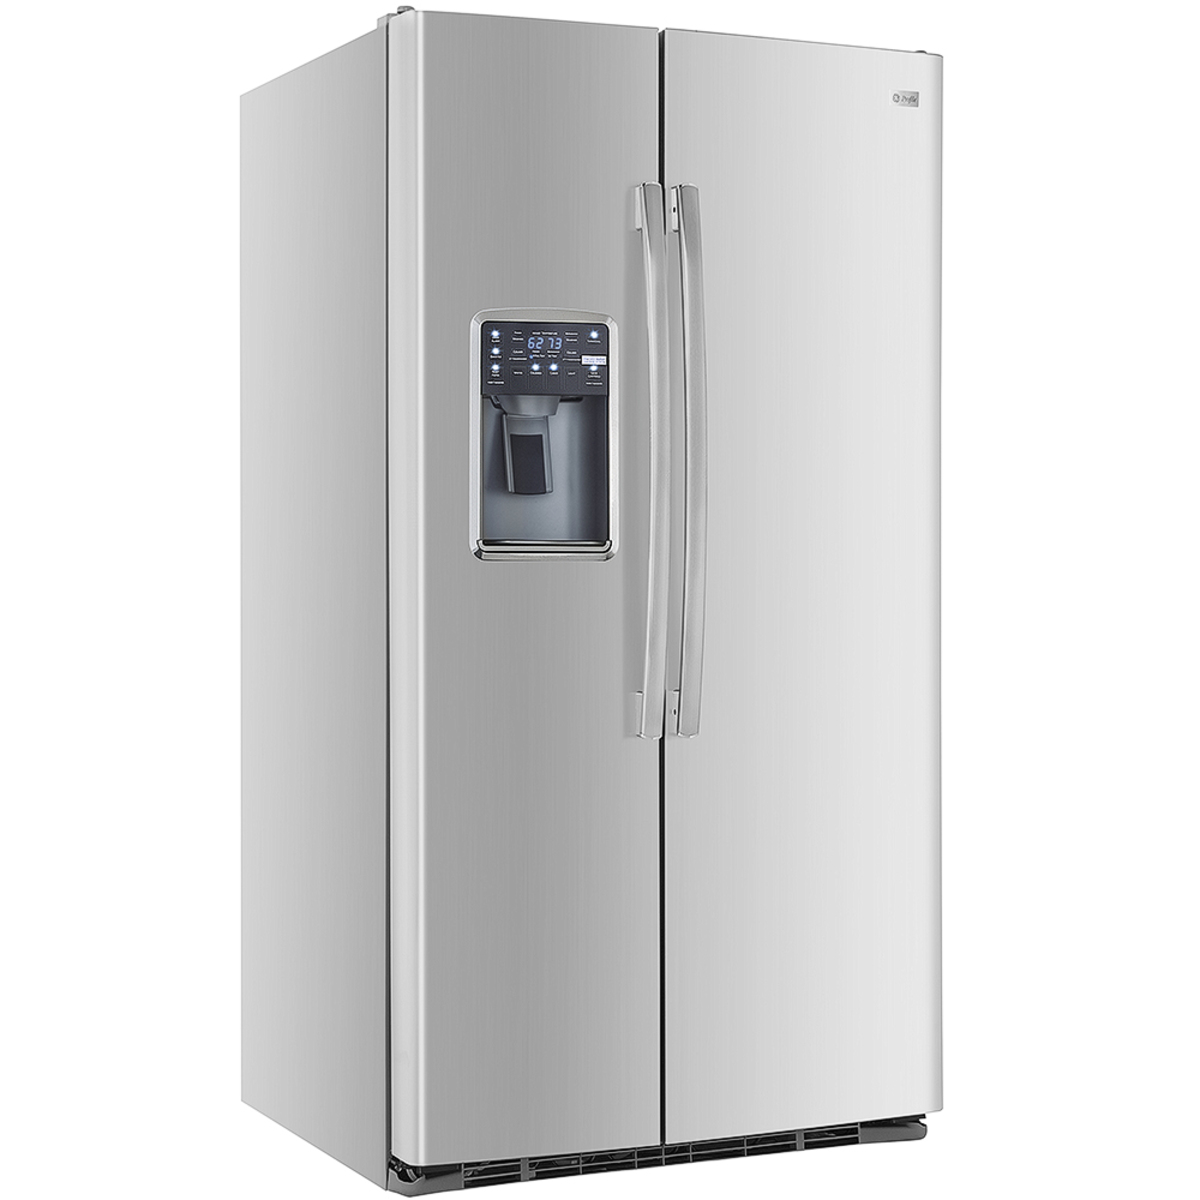 Refrigeradores no frost